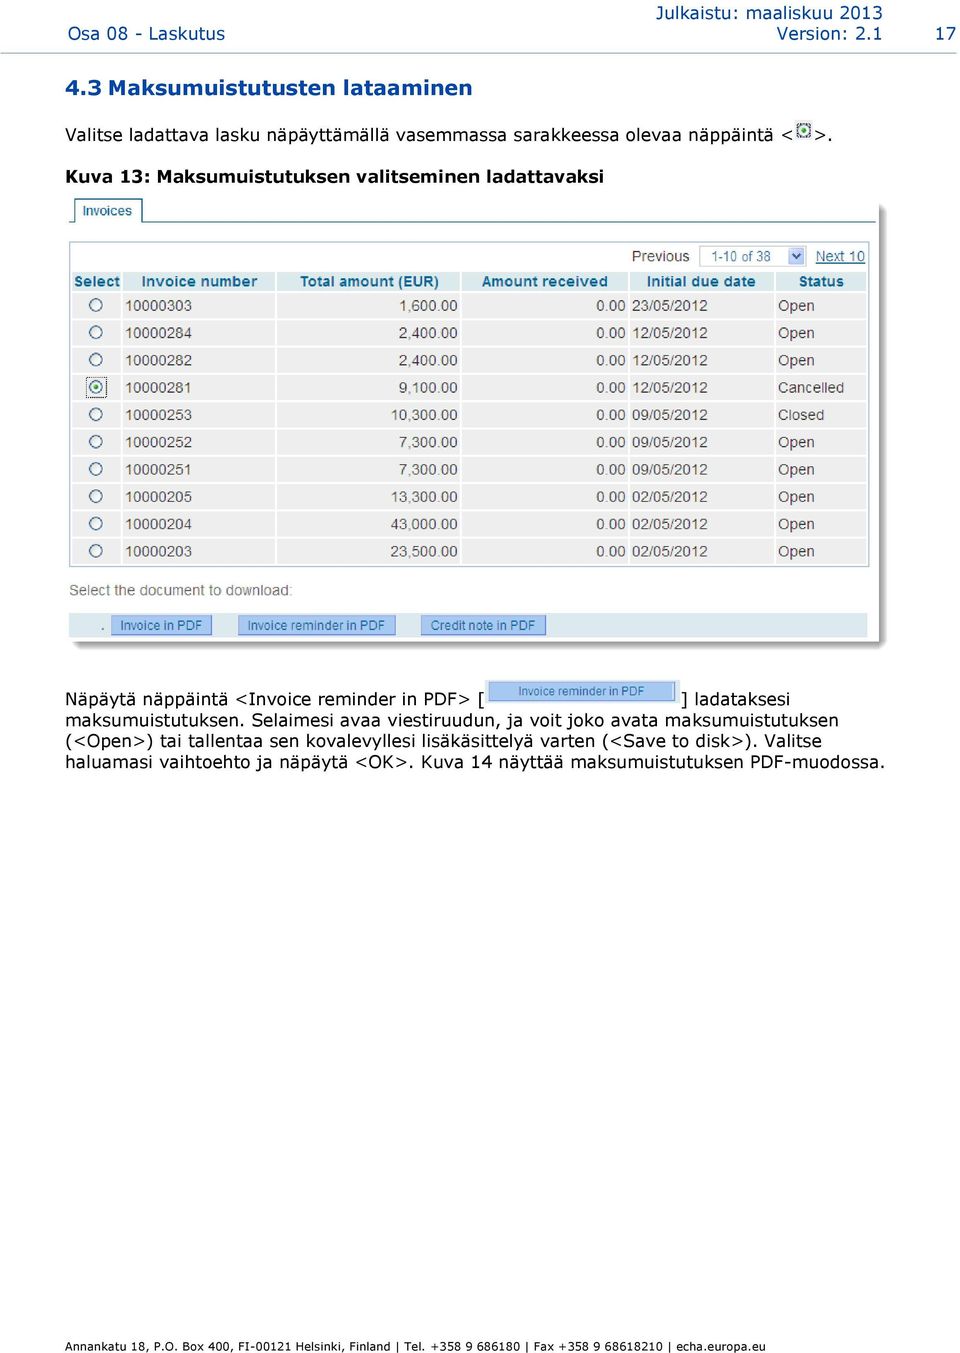 Kuva 13: Maksumuistutuksen valitseminen ladattavaksi Näpäytä näppäintä <Invoice reminder in PDF> [ ] ladataksesi maksumuistutuksen.